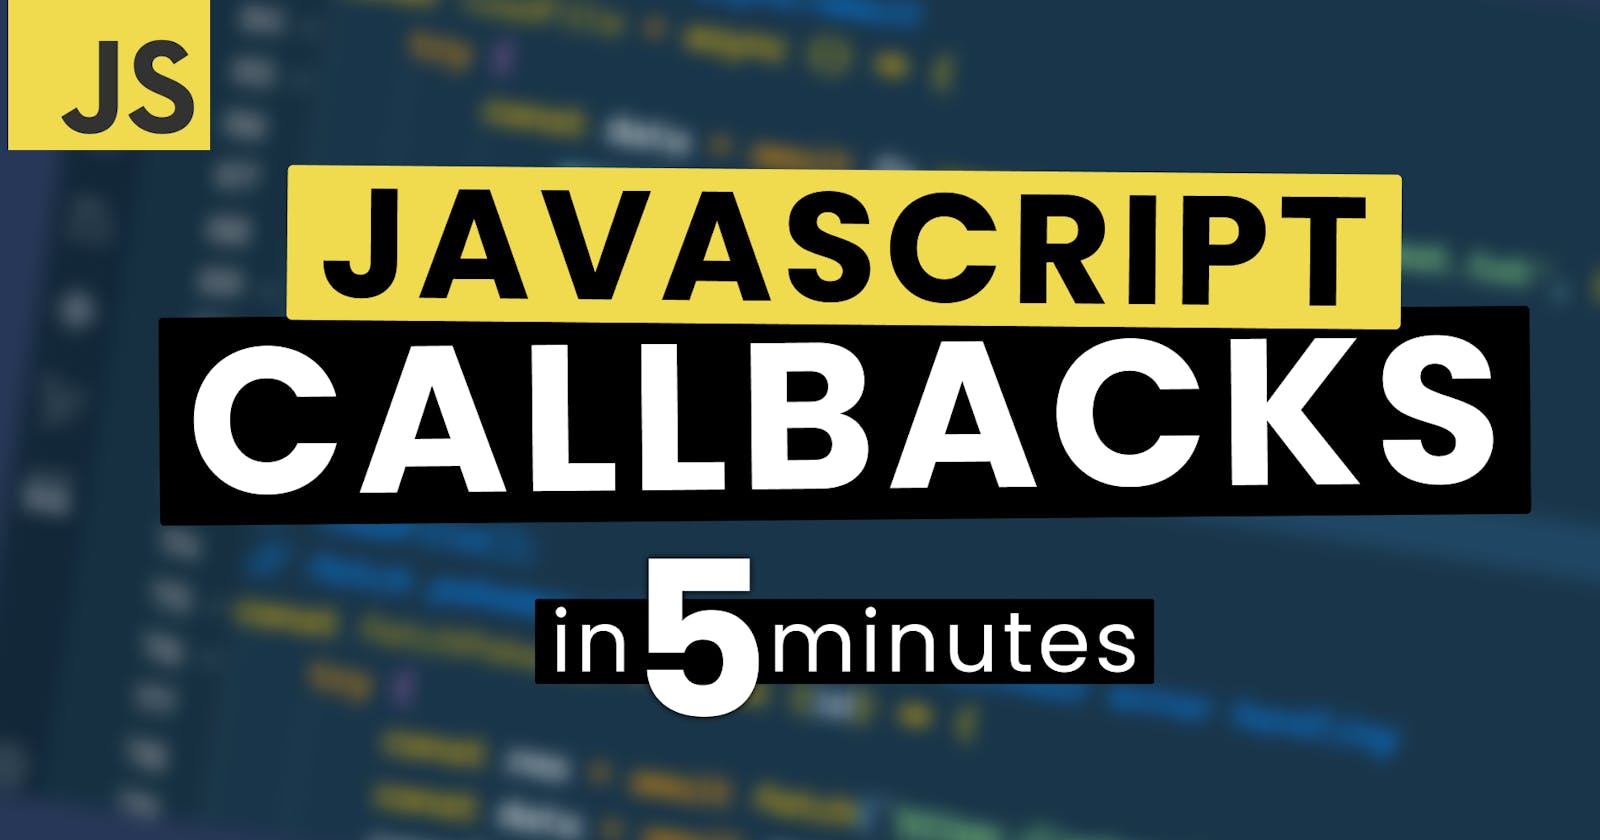 JavaScript Callbacks Explained in 5 Minutes